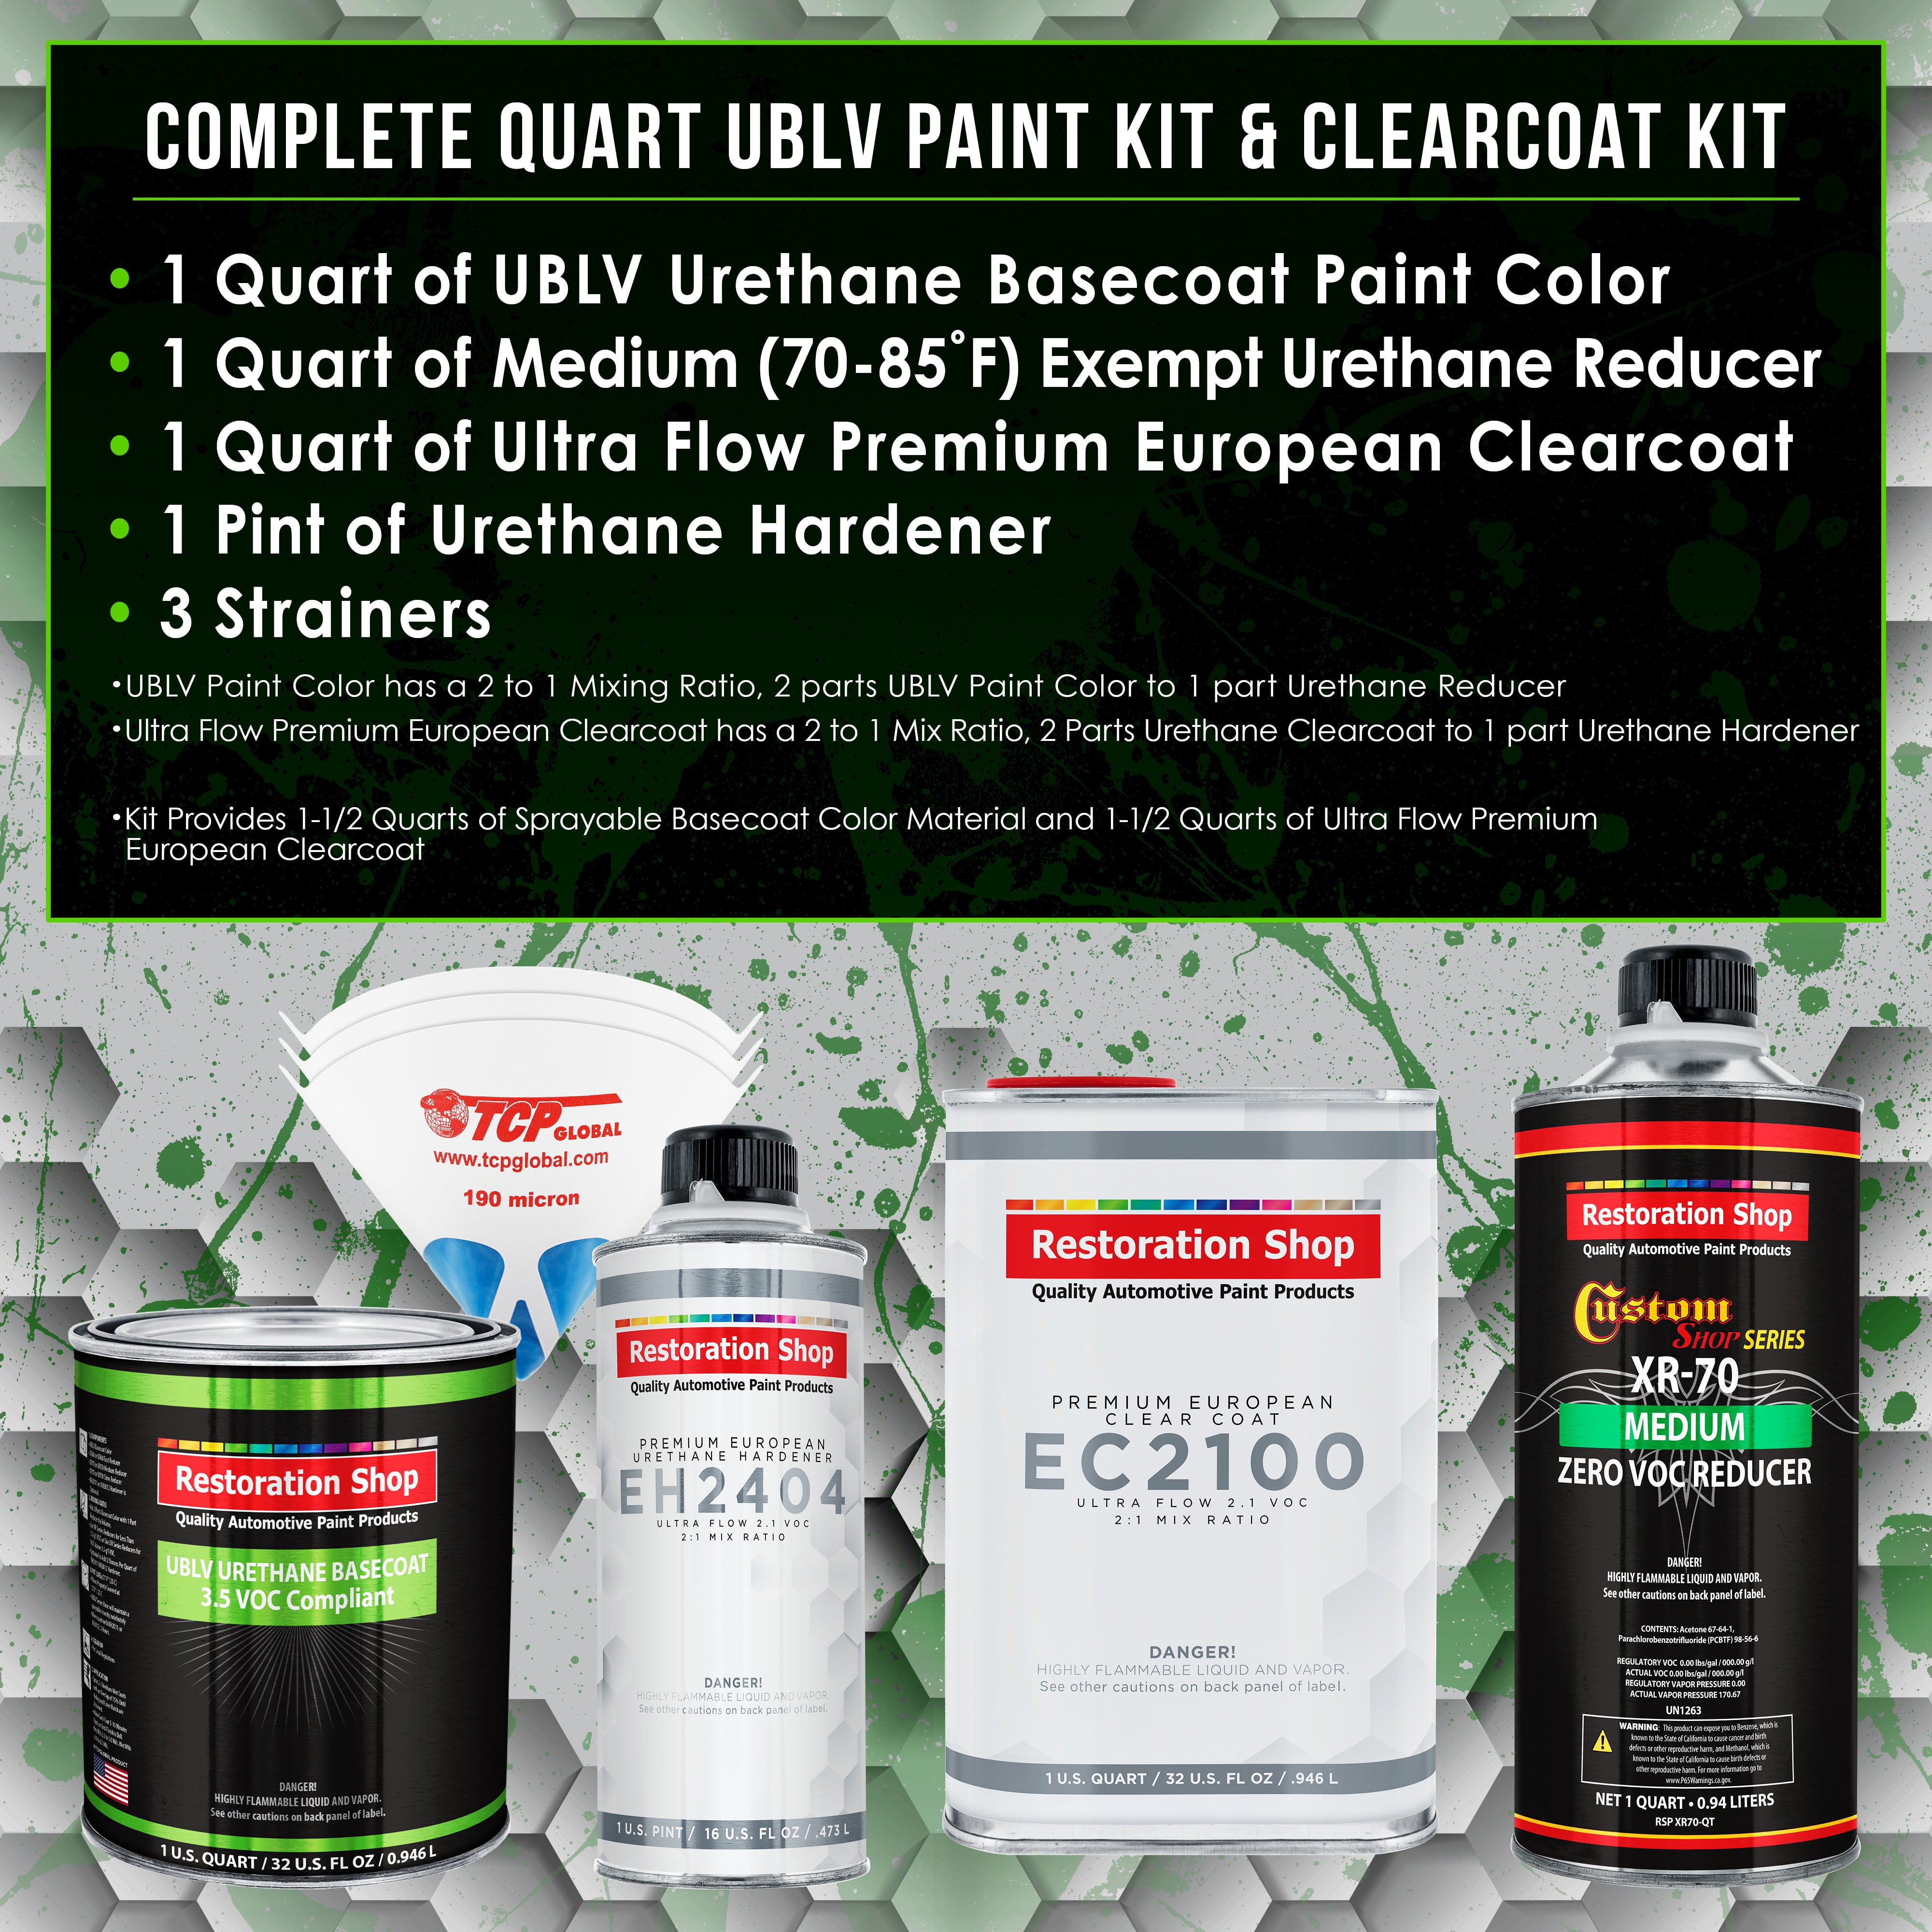 Reptile Red Low VOC Urethane Basecoat/Premium Clearcoat Car Auto Paint Complete Medium Quart Kit - Restoration Shop